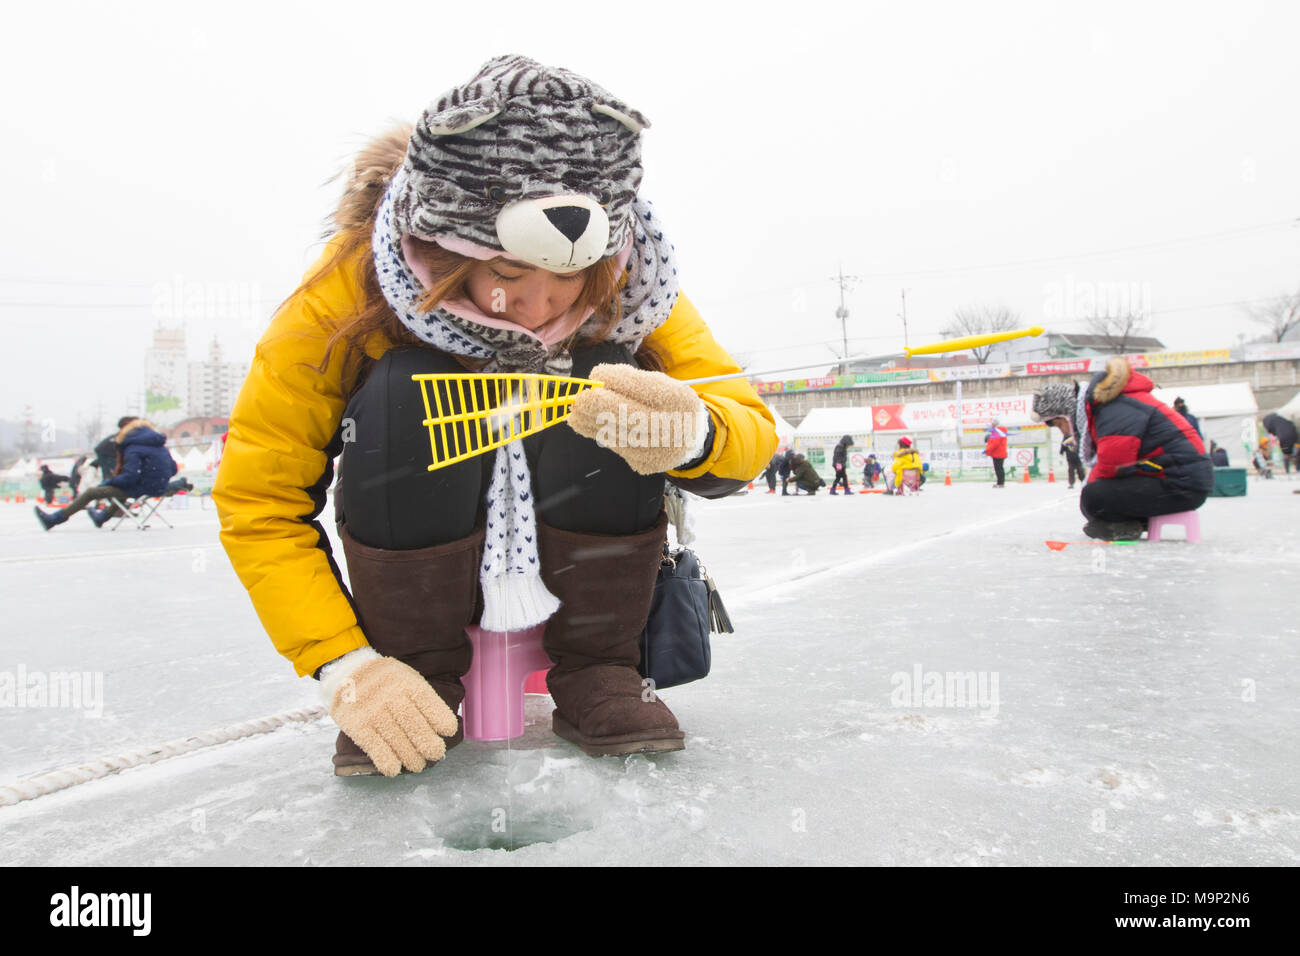 Un caldo vestito donna sta cercando di catturare un pesce a un fiume congelato. Il Hwacheon Sancheoneo Festival di ghiaccio è una tradizione per il popolo coreano. Ogni anno nel mese di gennaio la folla si riuniranno presso il fiume congelato per celebrare il freddo e la neve dell'inverno. Attrazione principale è la pesca sul ghiaccio. Giovani e vecchi attendere pazientemente su un piccolo buco nel ghiaccio per una trota di mordere. In tende possono lasciare il pesce grigliato dopo che loro sono mangiati. Tra le altre attività sono corse in slittino e pattinaggio sul ghiaccio. La vicina regione Pyeongchang ospiterà le Olimpiadi Invernali nel febbraio 2018. Foto Stock